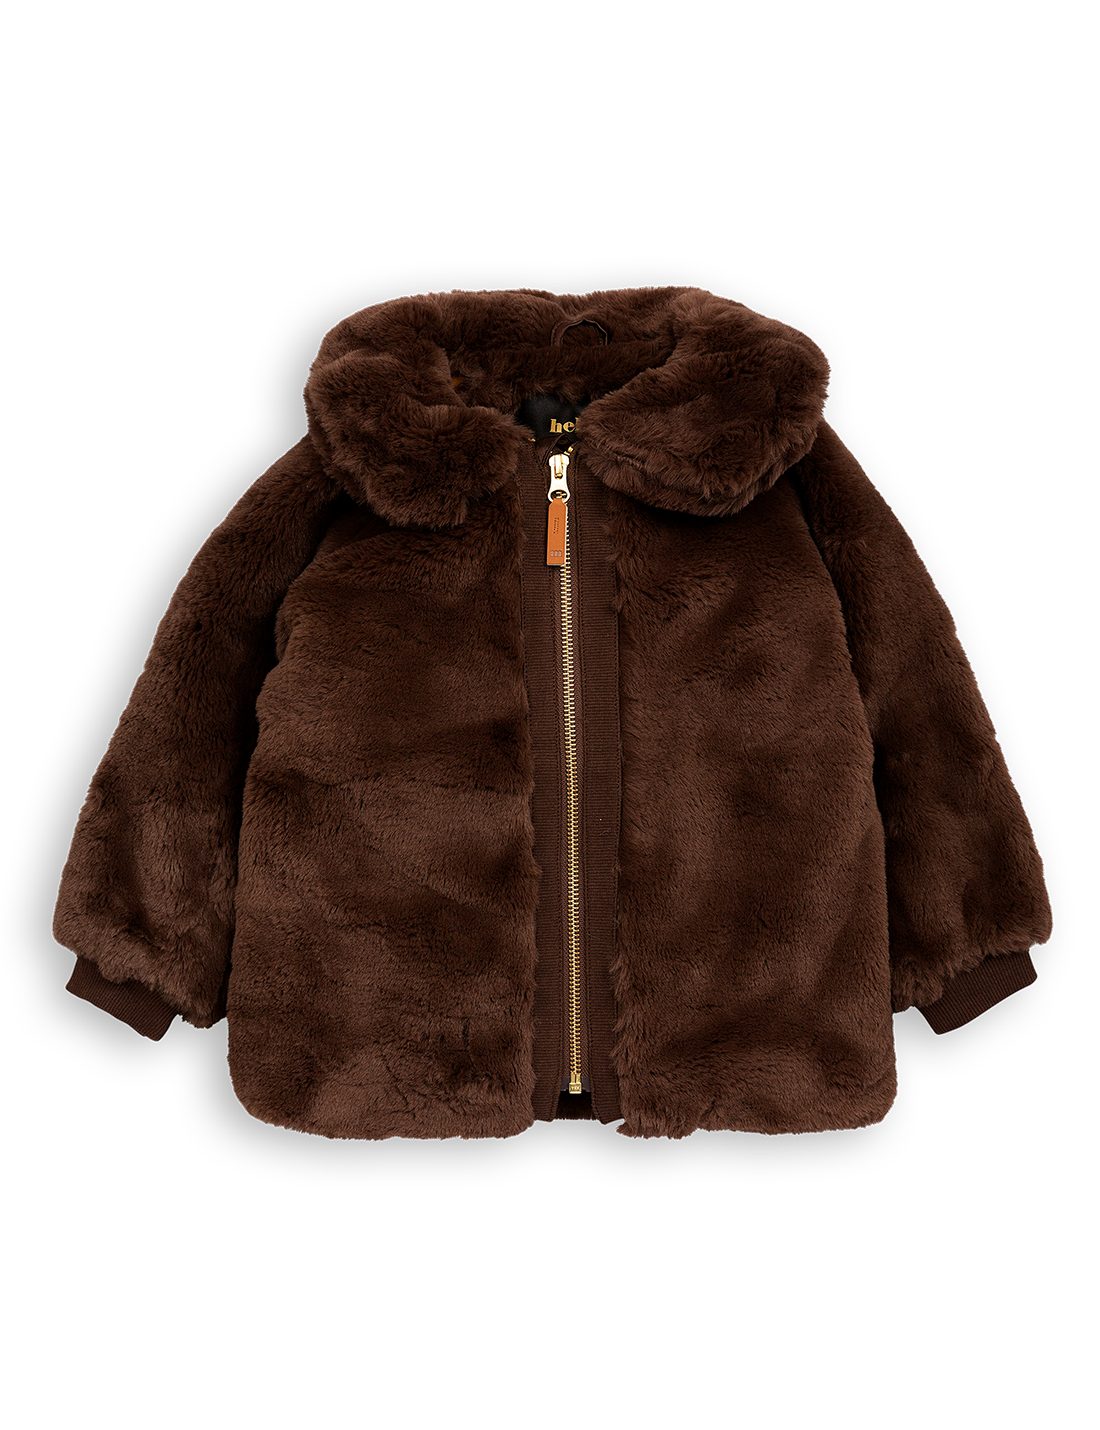 Mini Rodini Faux Fur Jacket PNG Image